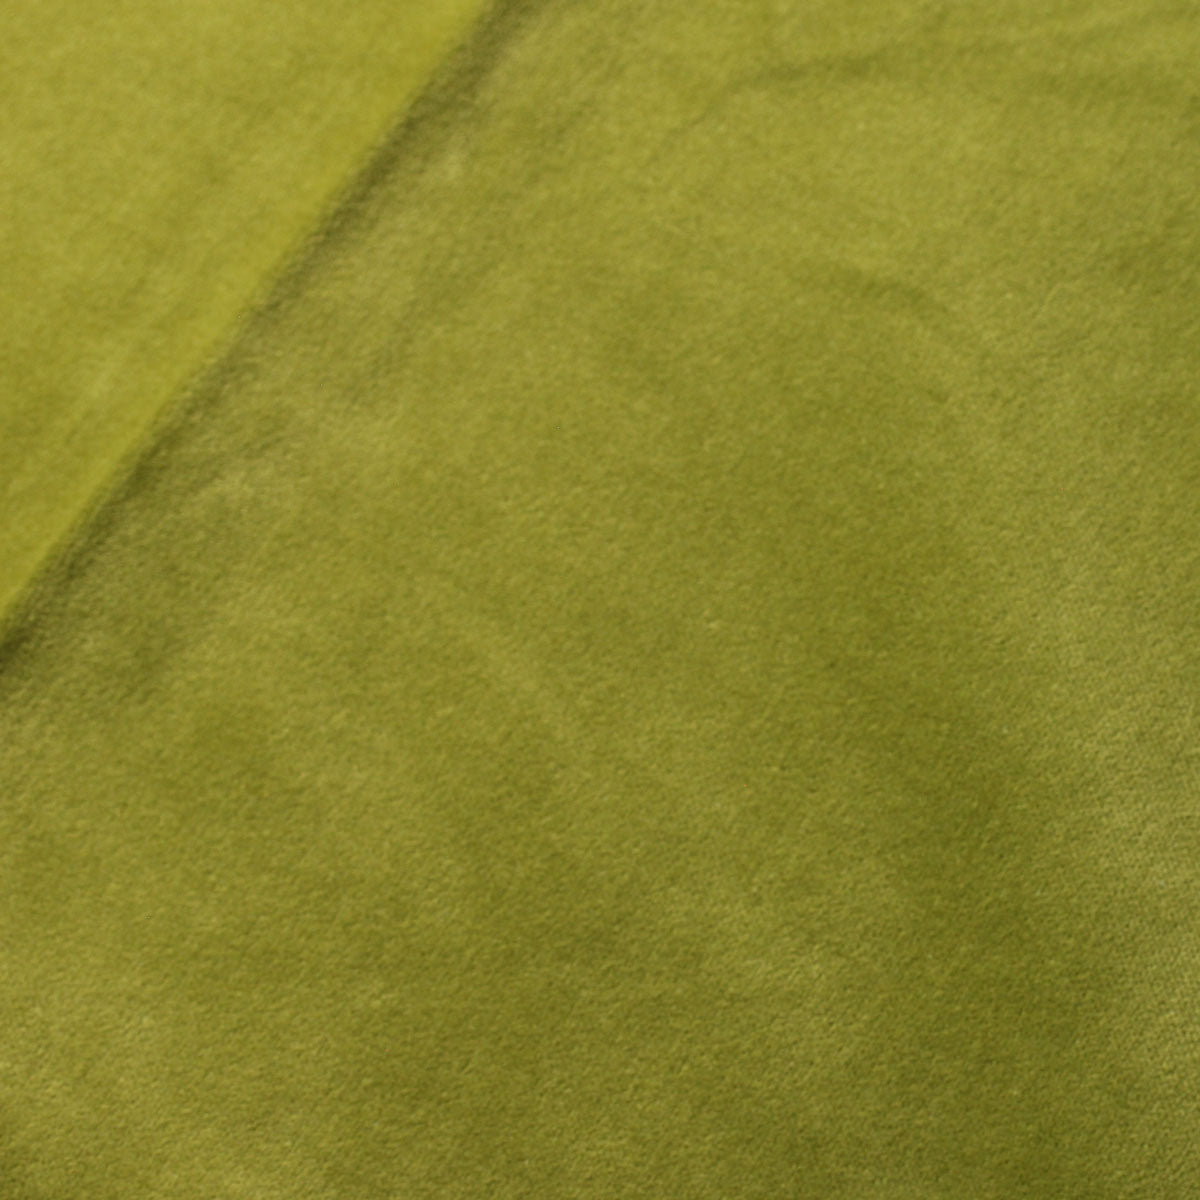 Olive Green Drab Cotton Velvet Upholstery Drapery Fabric